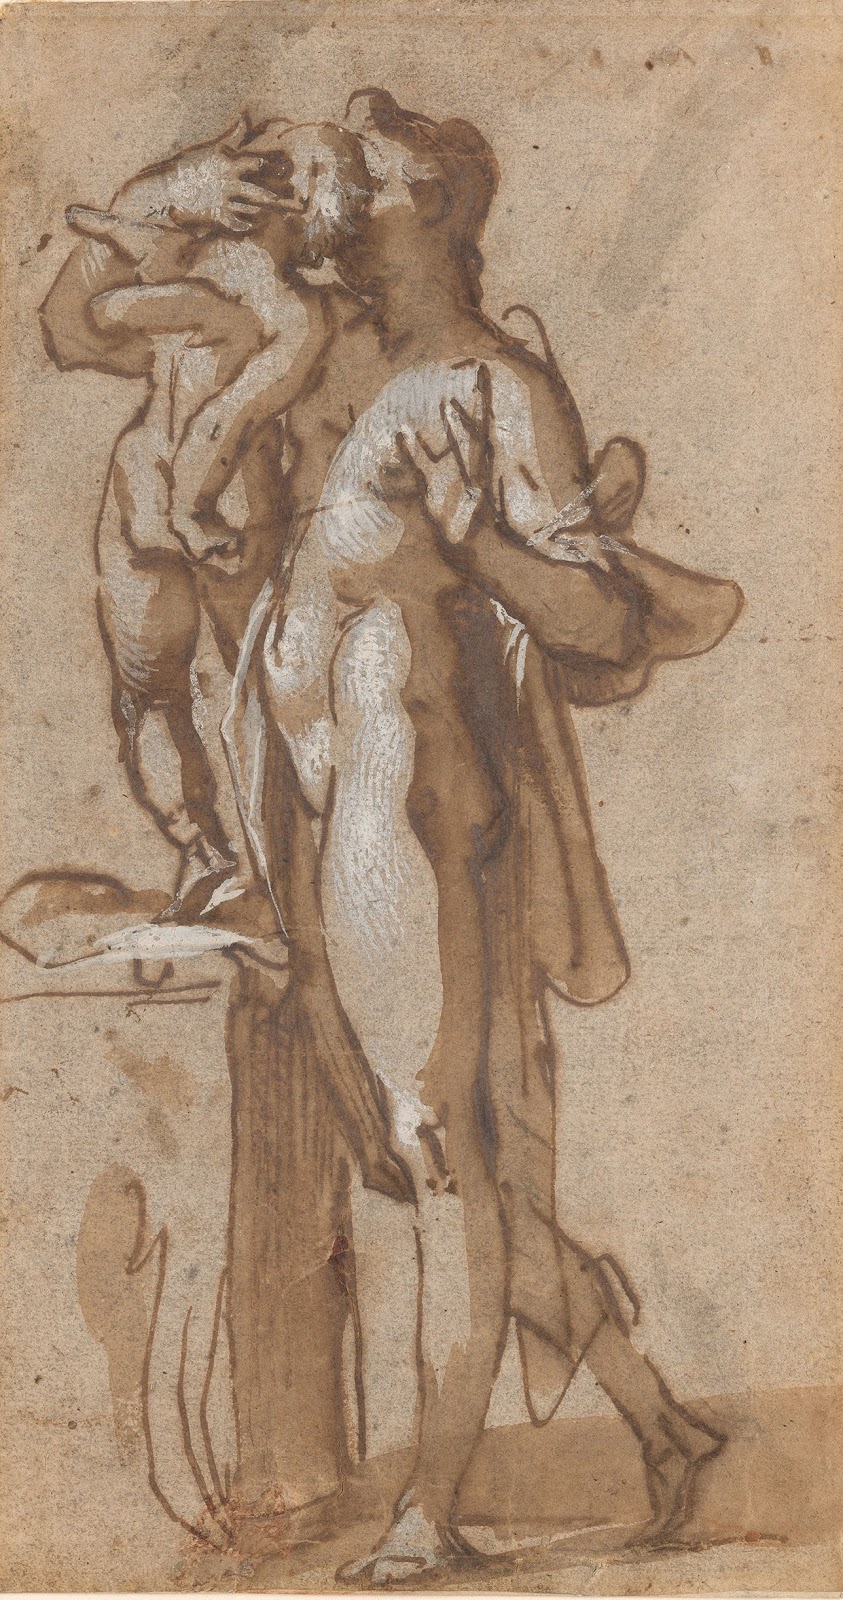 Bartholomaeus+Spranger-1546-1611 (51).jpg